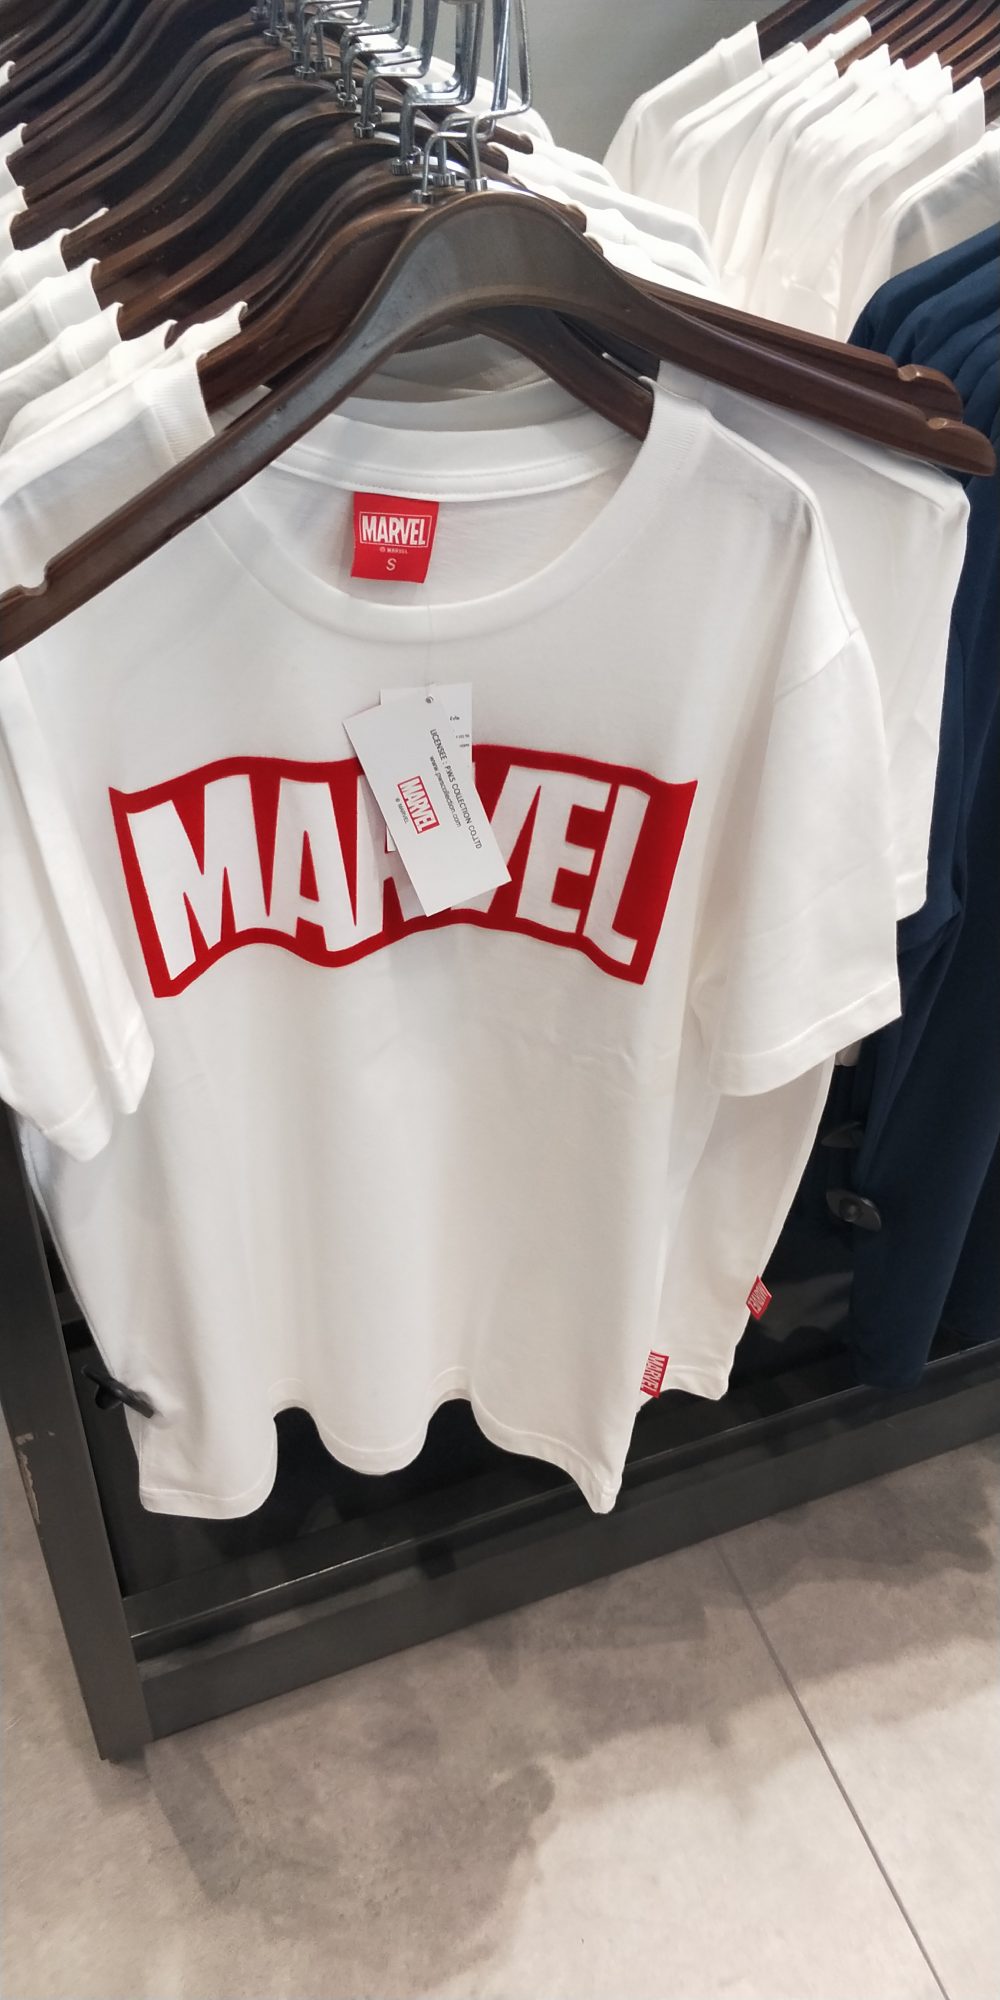 Marvel泰國漫威基地 主題周邊商品一覽 衣服周邊 - 黑豹 - 敗家達人推薦